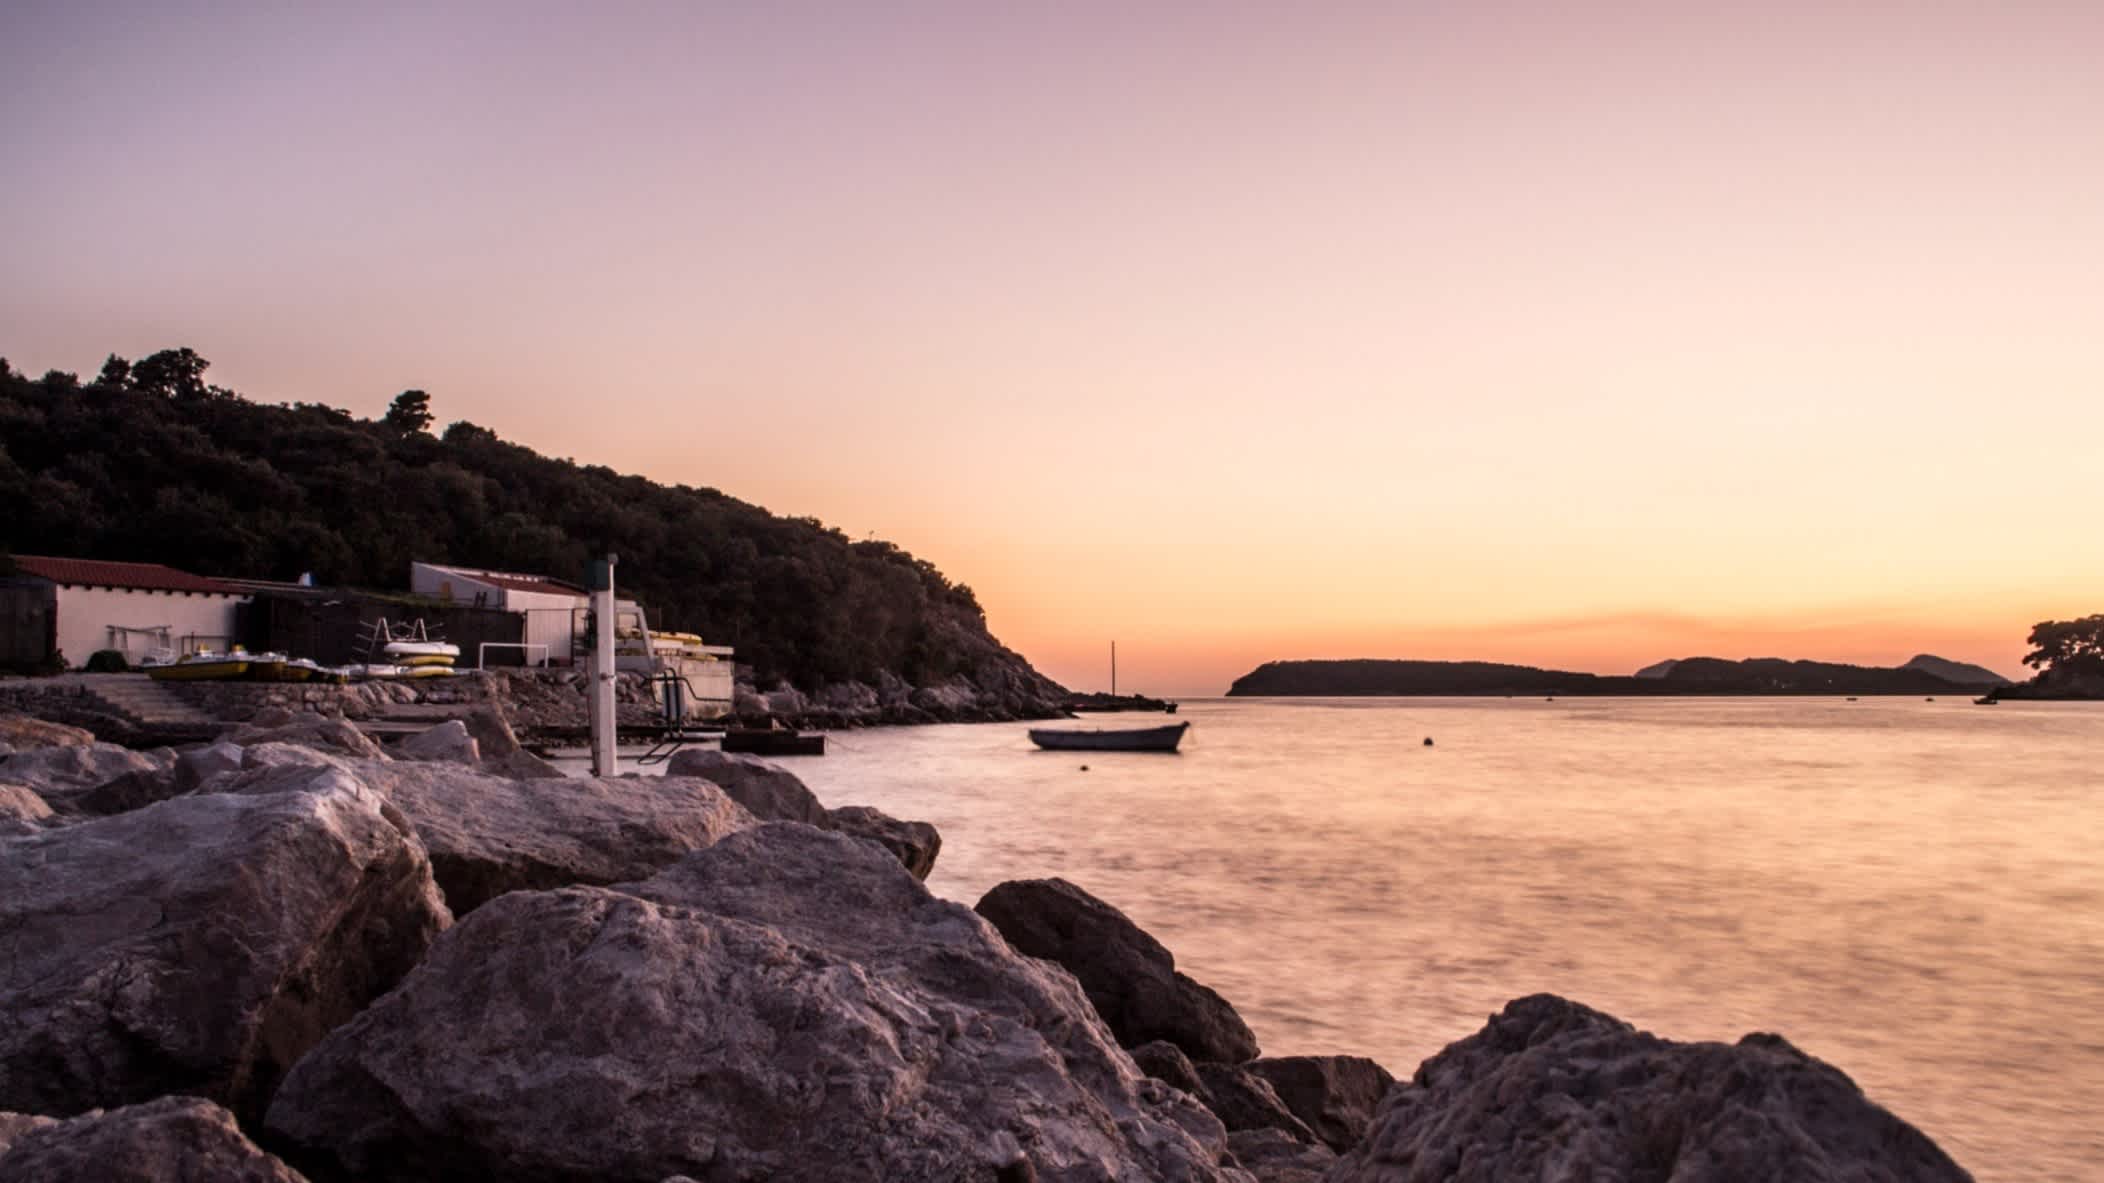 Der Strand von Copacabana-Strand, Dubrovnik, Kroatien mit Felsen und Häusern entlang der Bucht und Blick über das Wasser auf den Sonnenuntergang.